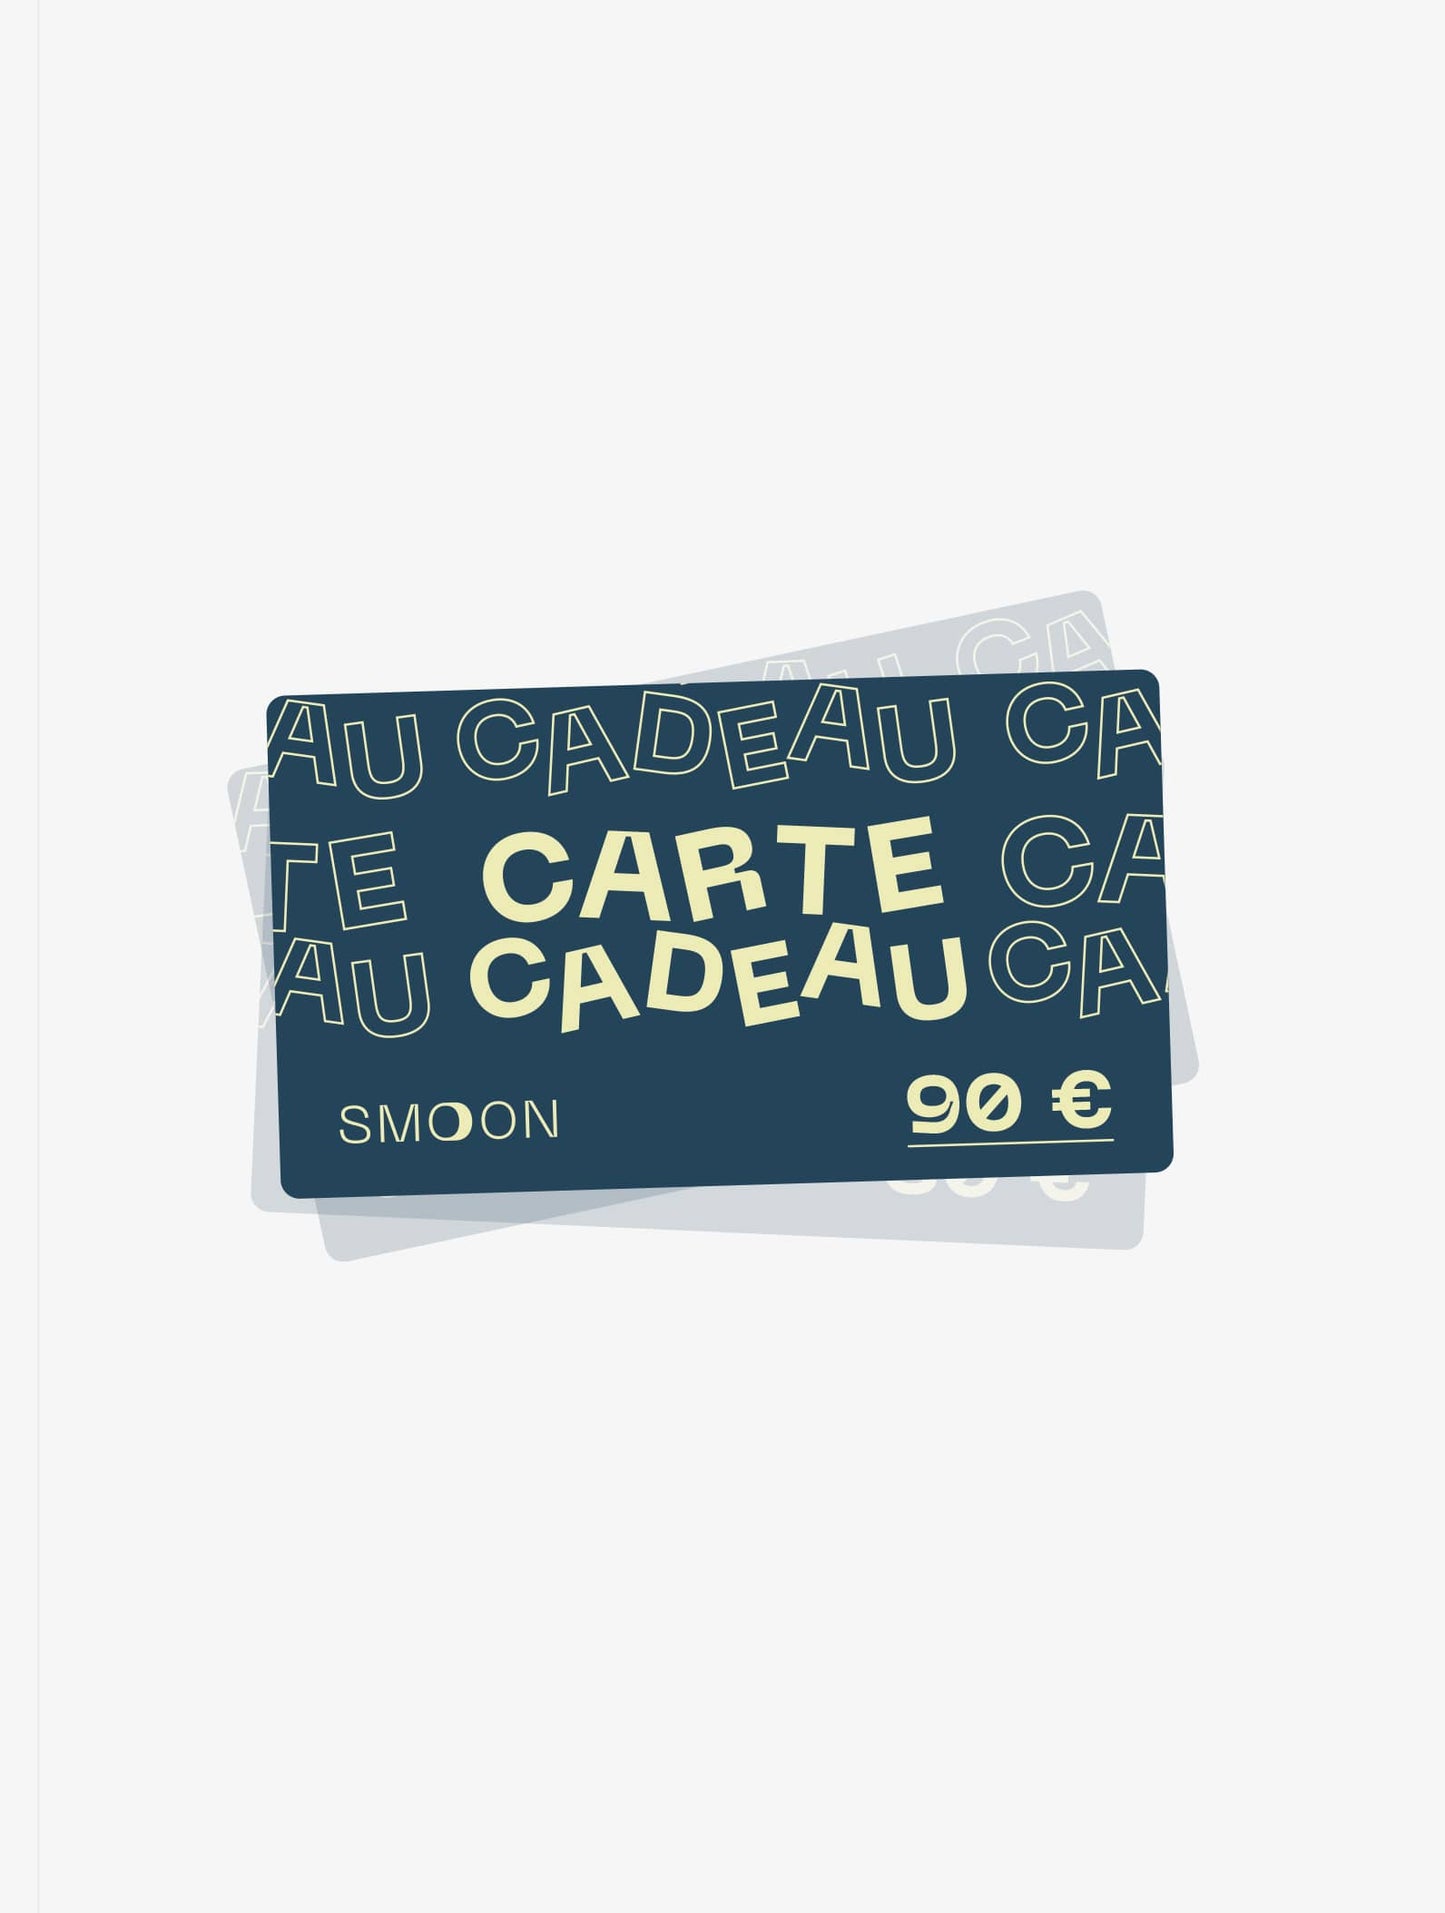 image de la carte cadeau smoon lingerie d'une valeur de 90 euros